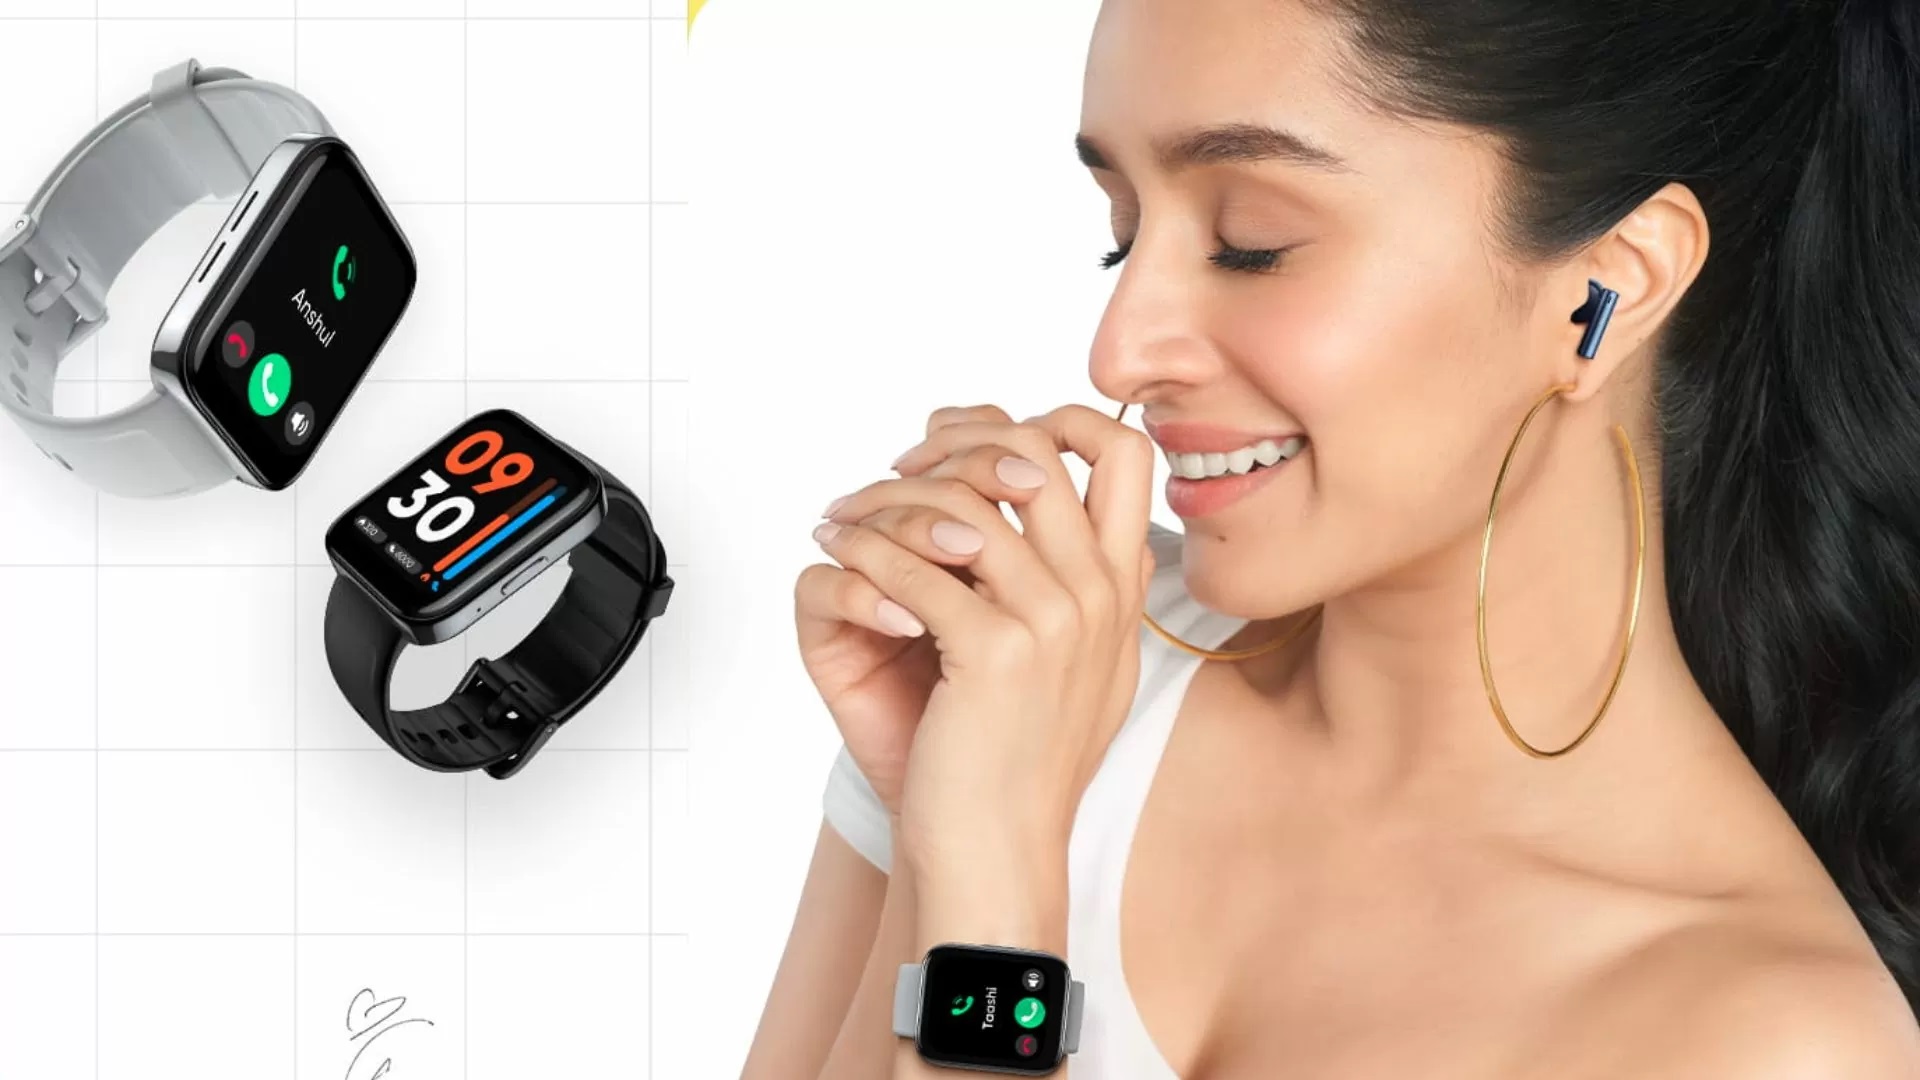 Lo smartwatch Realme Watch 3 con sensore SpO2 e possibilità di effettuare  chiamate è finalmente disponibile in Europa al prezzo di 70 euro